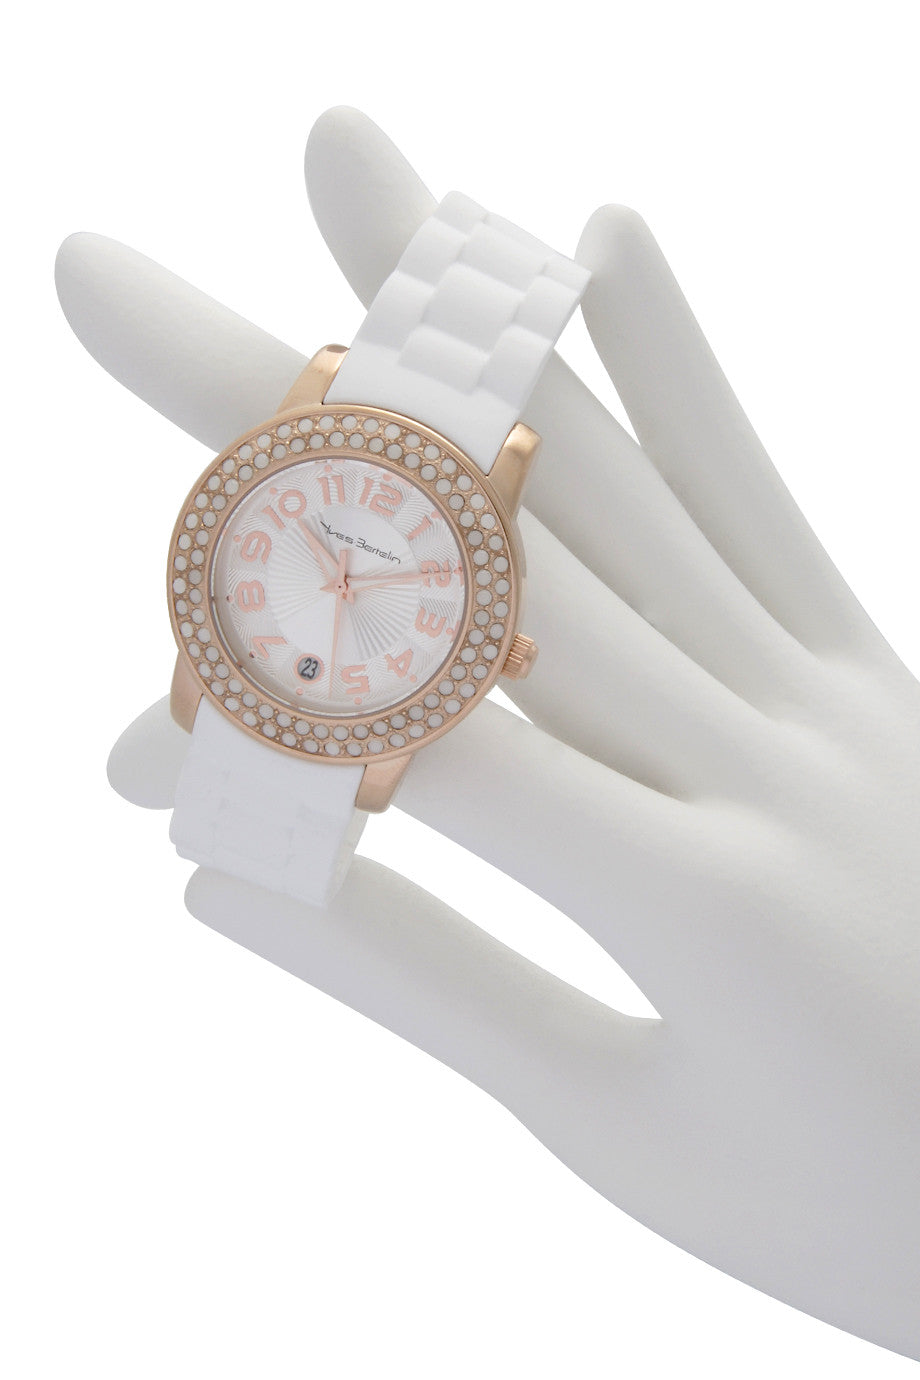 DATUM roségouden wit kristallen horloge